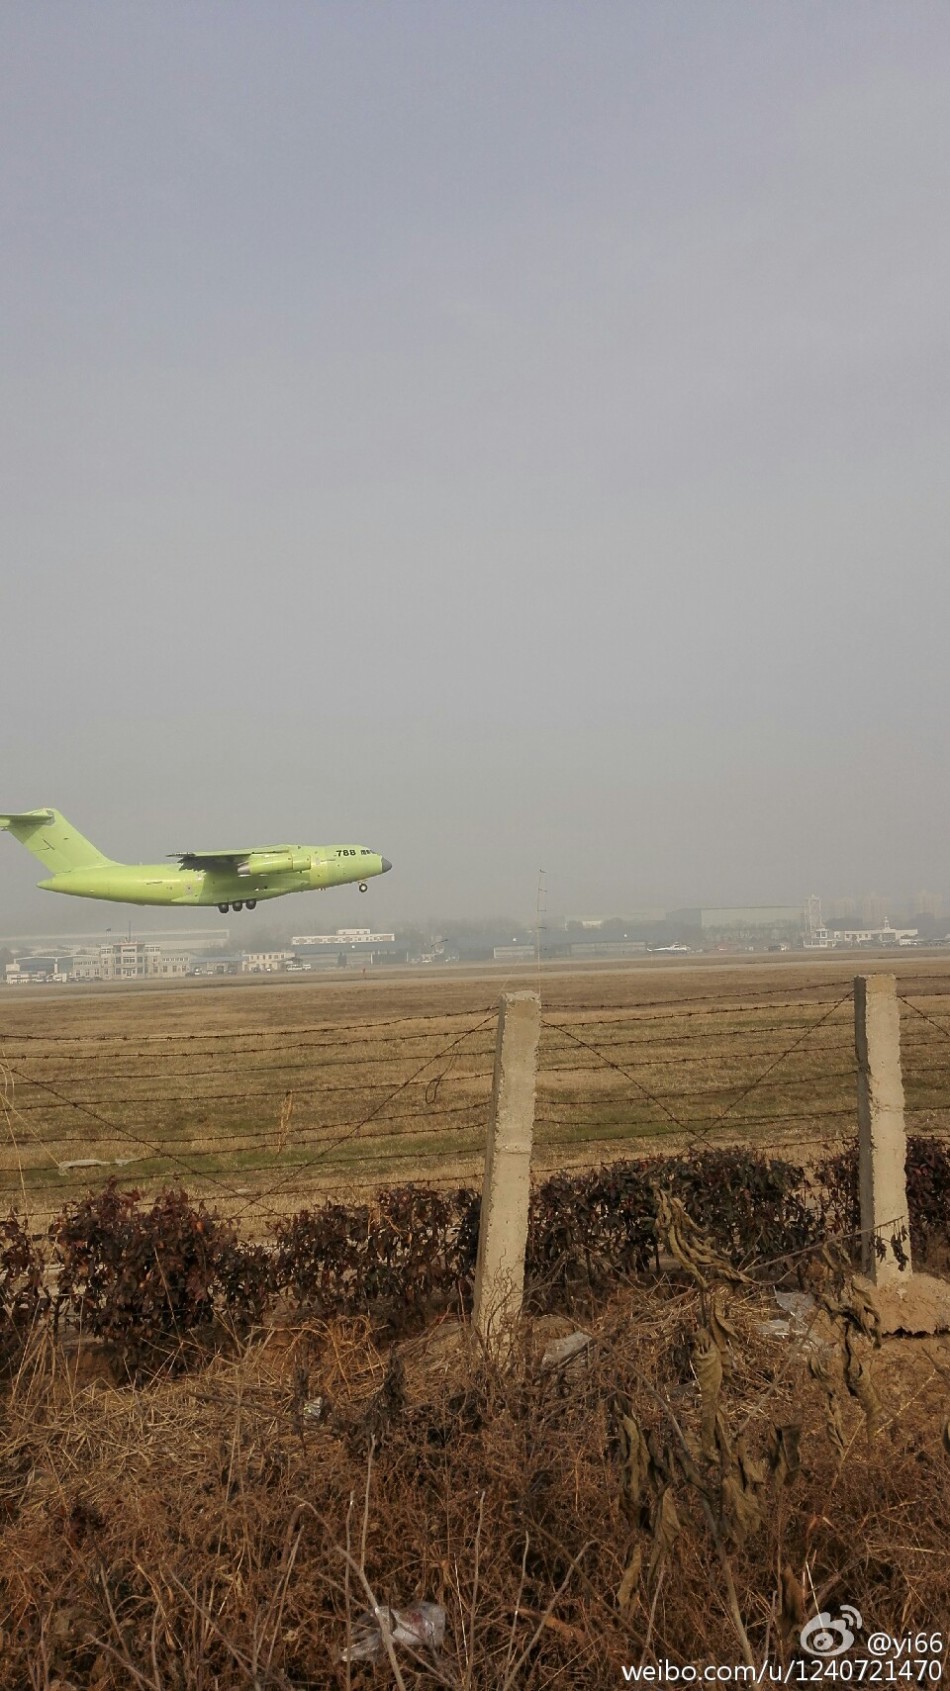 Пятый прототип китайского транспортного самолета «Юнь-20» провел пробный полет